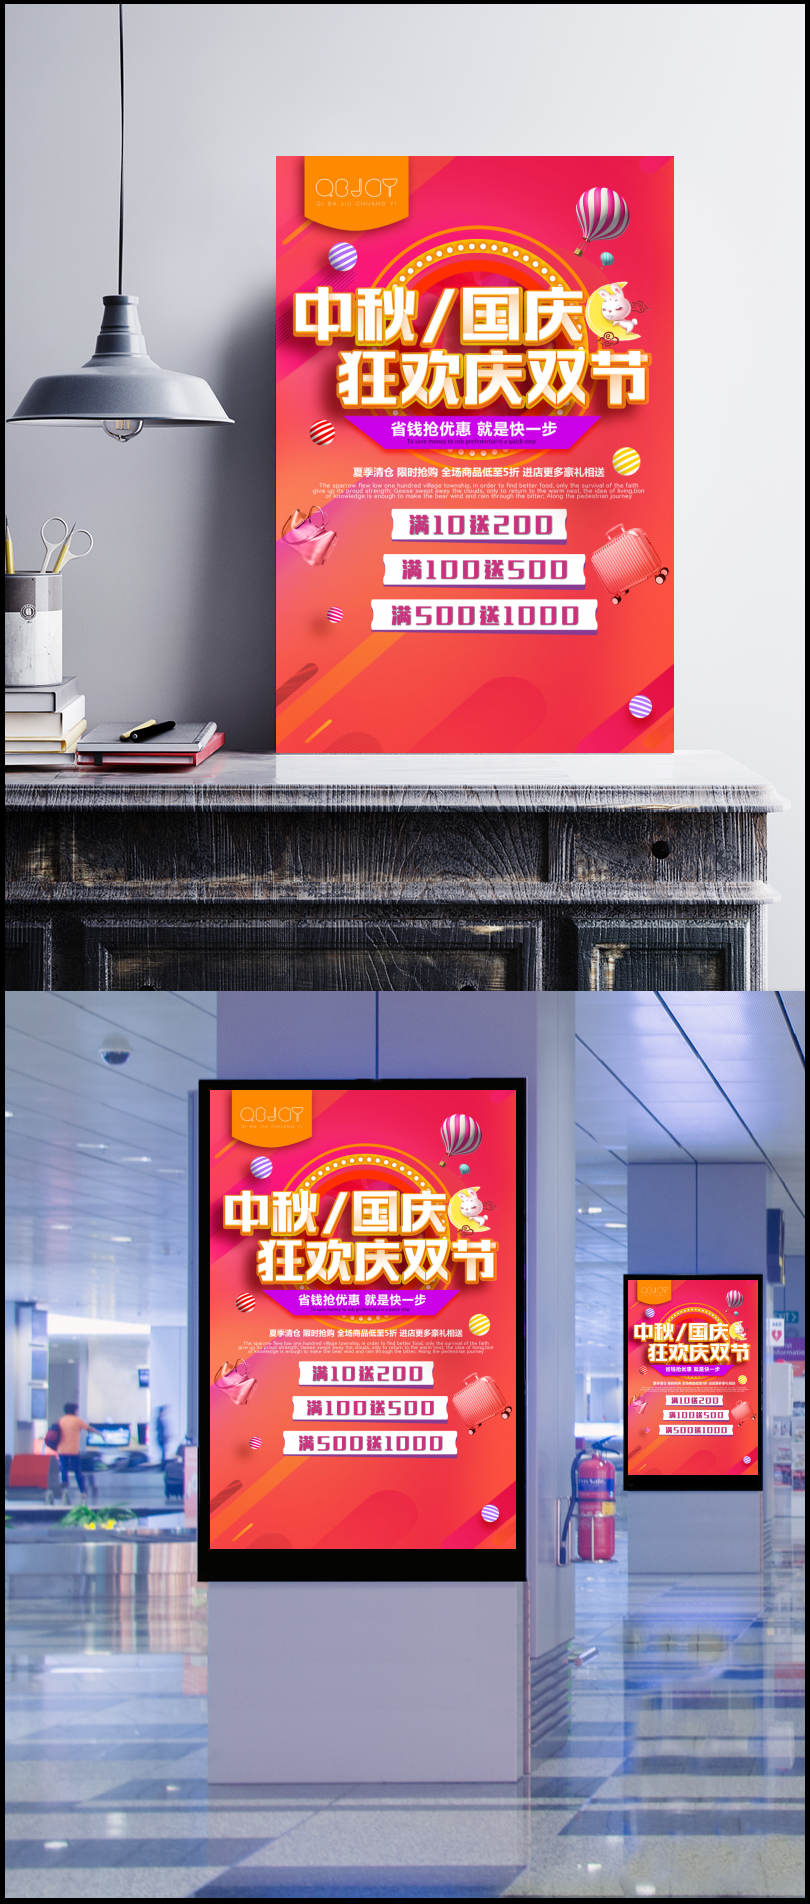 中秋国庆双节狂欢满减活动海报图片